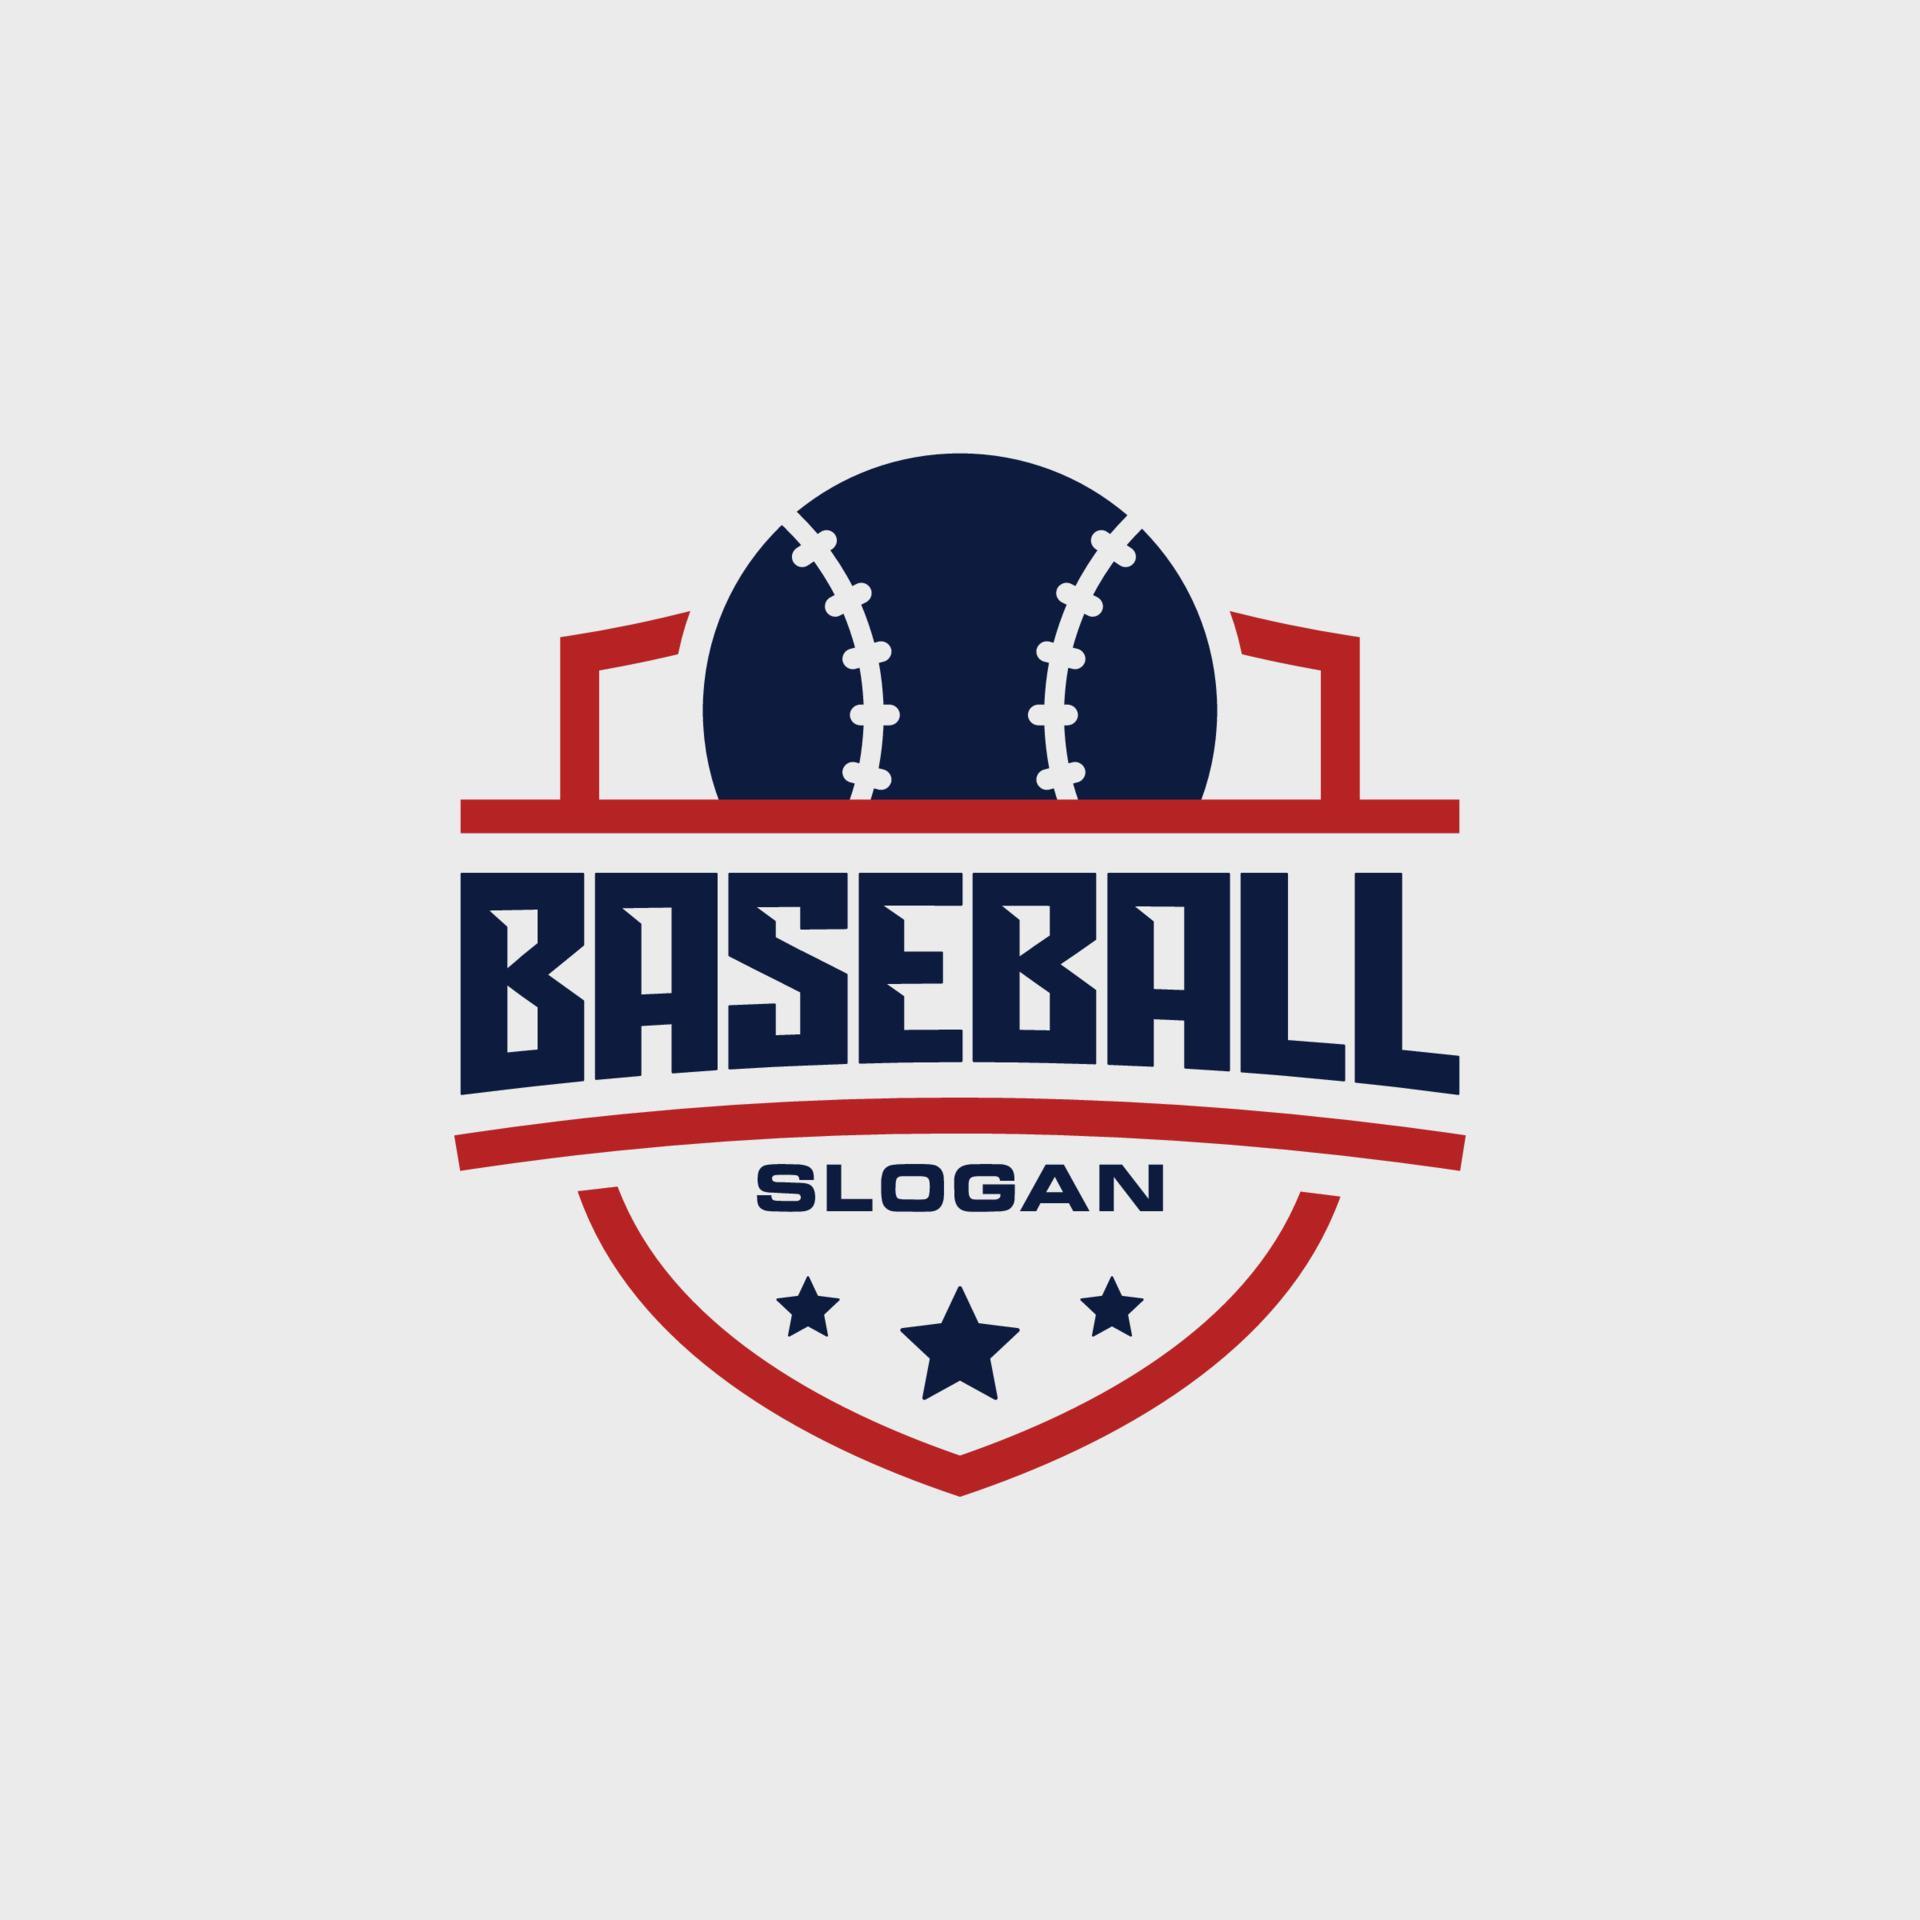 Baseball team emblem logo design vector illustration 18937570 Vector ...